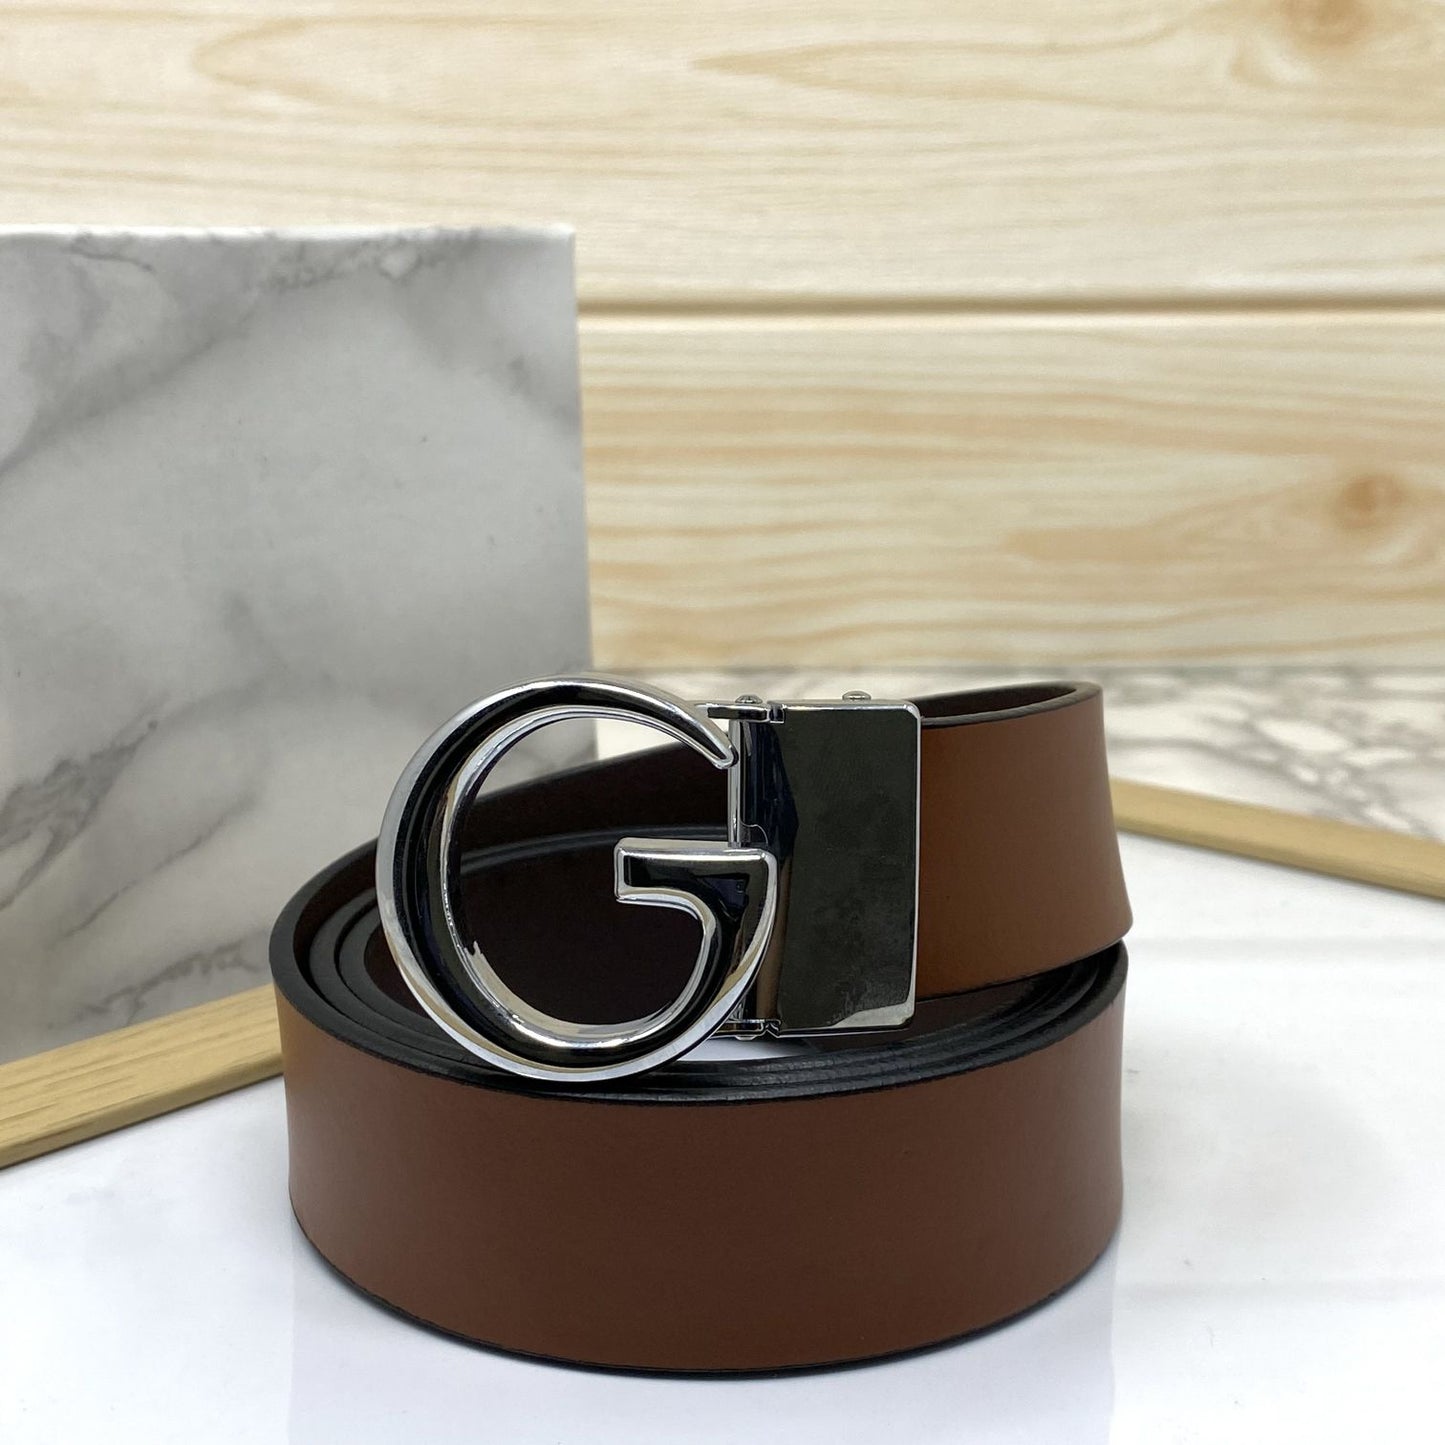 Stylish G Buckle Leather Strap Belt-JoansParamount